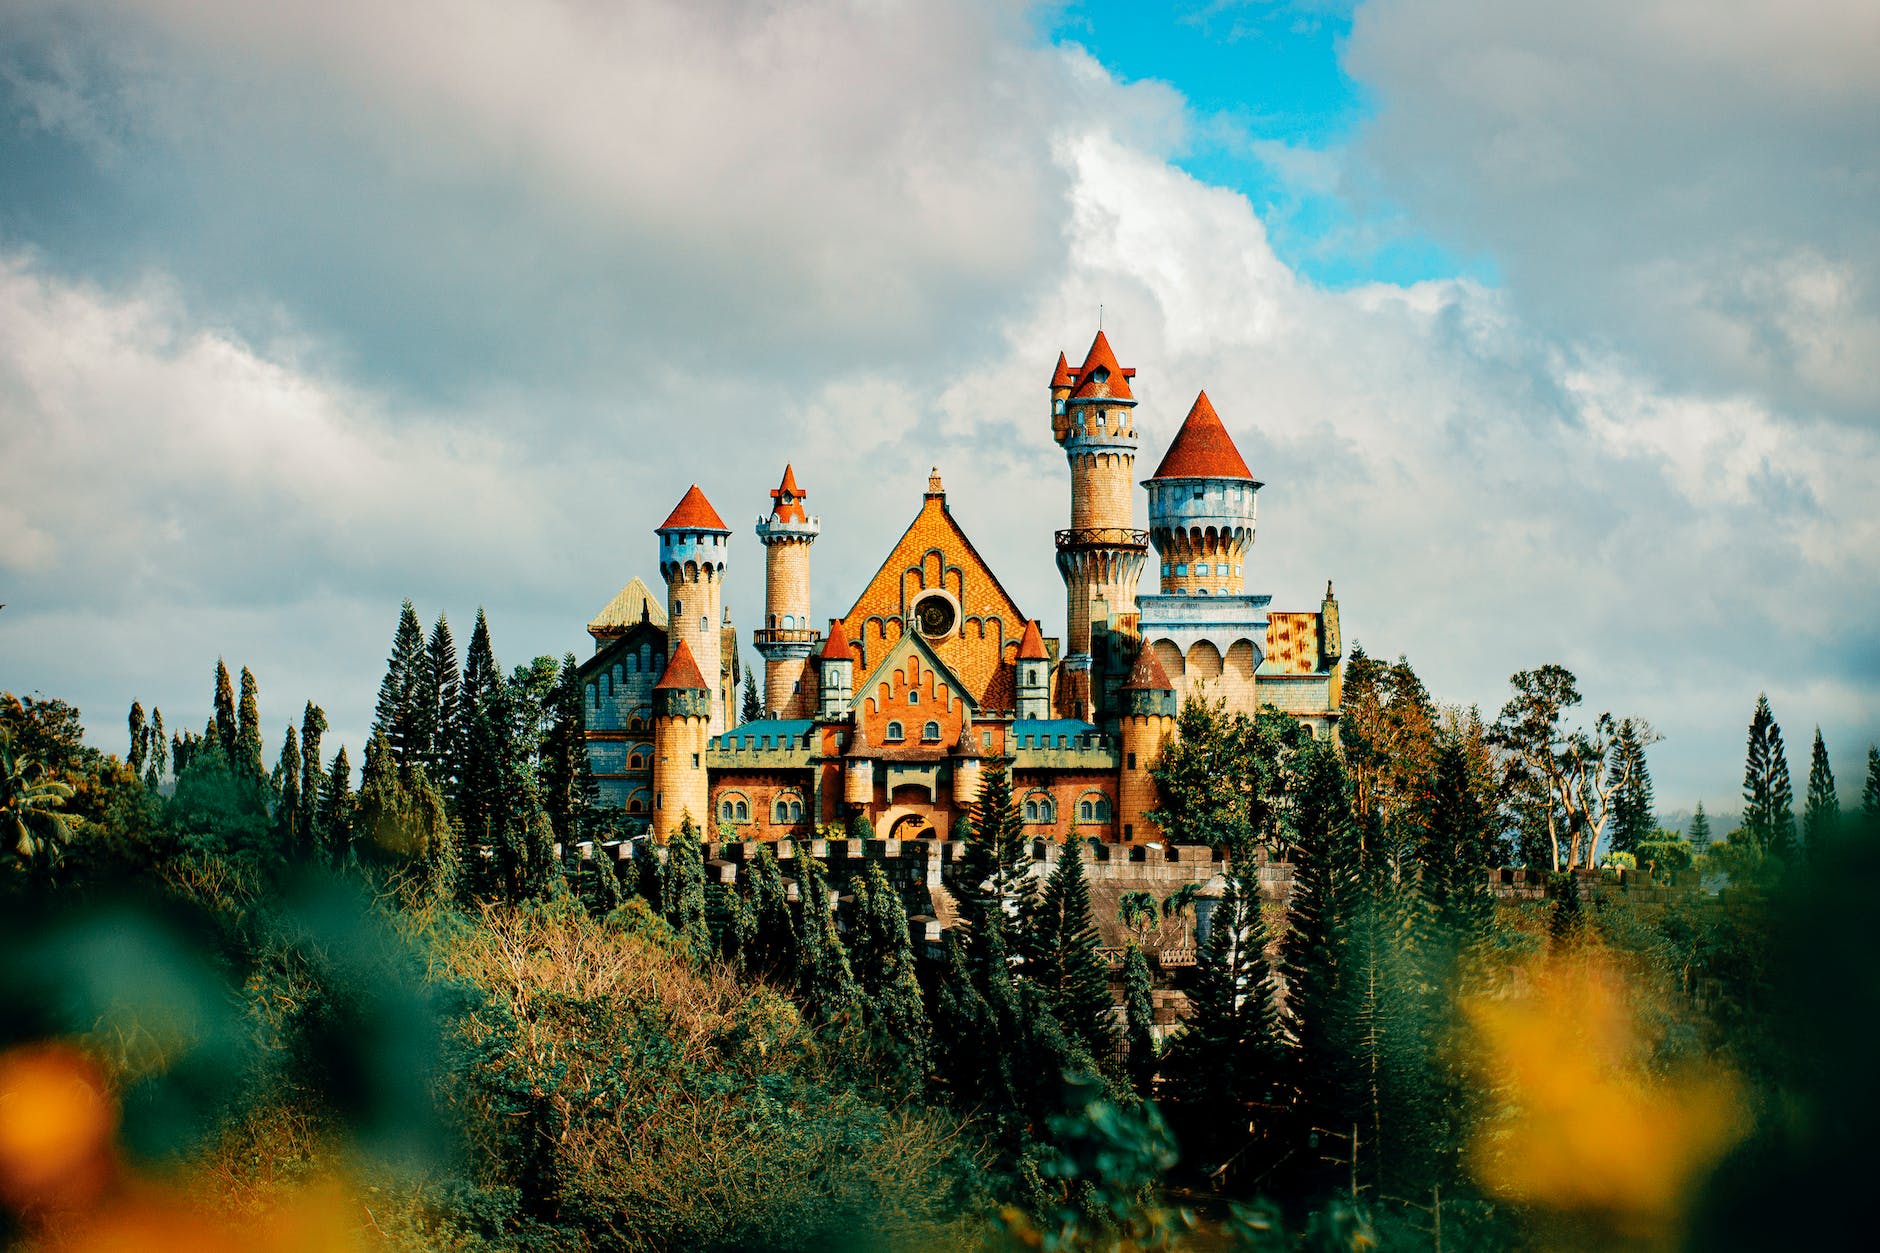 castle facade in theme park under cloudy sky